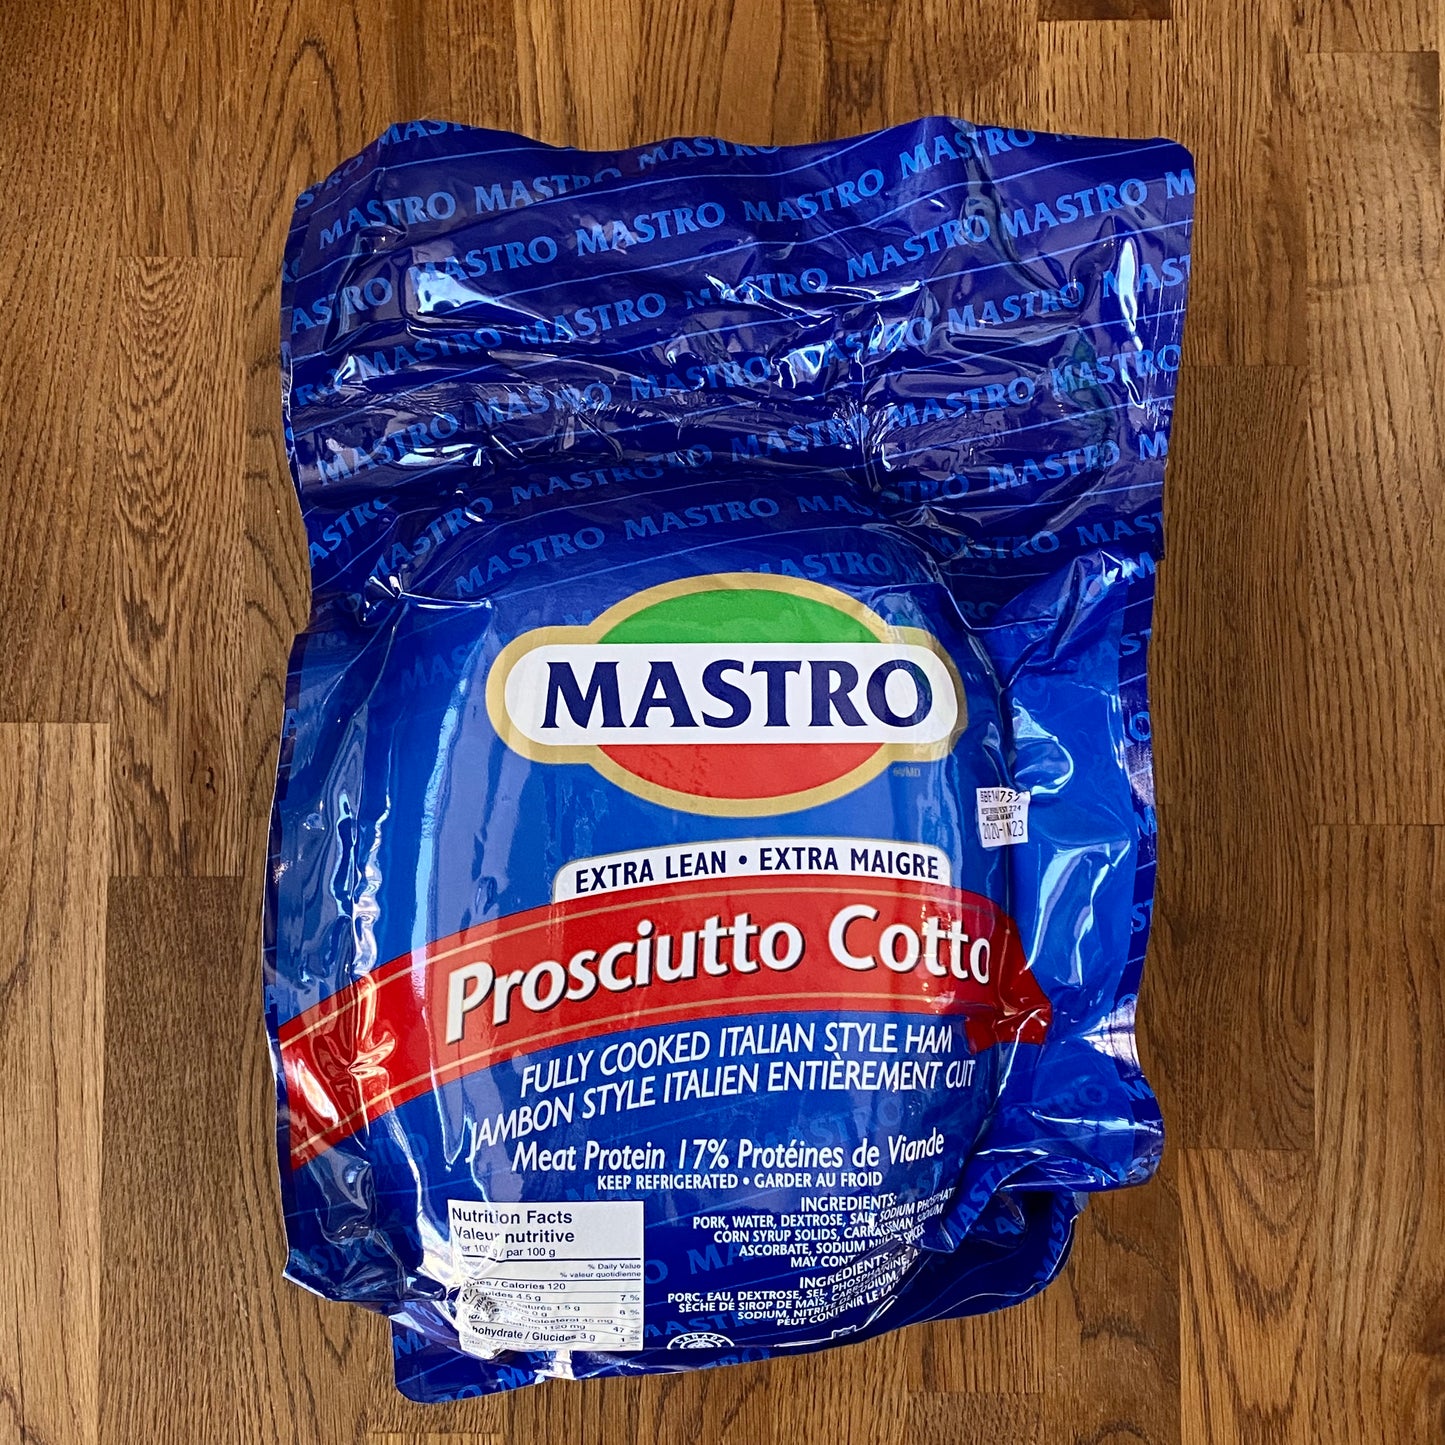 Prosciutto Cotto - Extra Lean - Per 100g